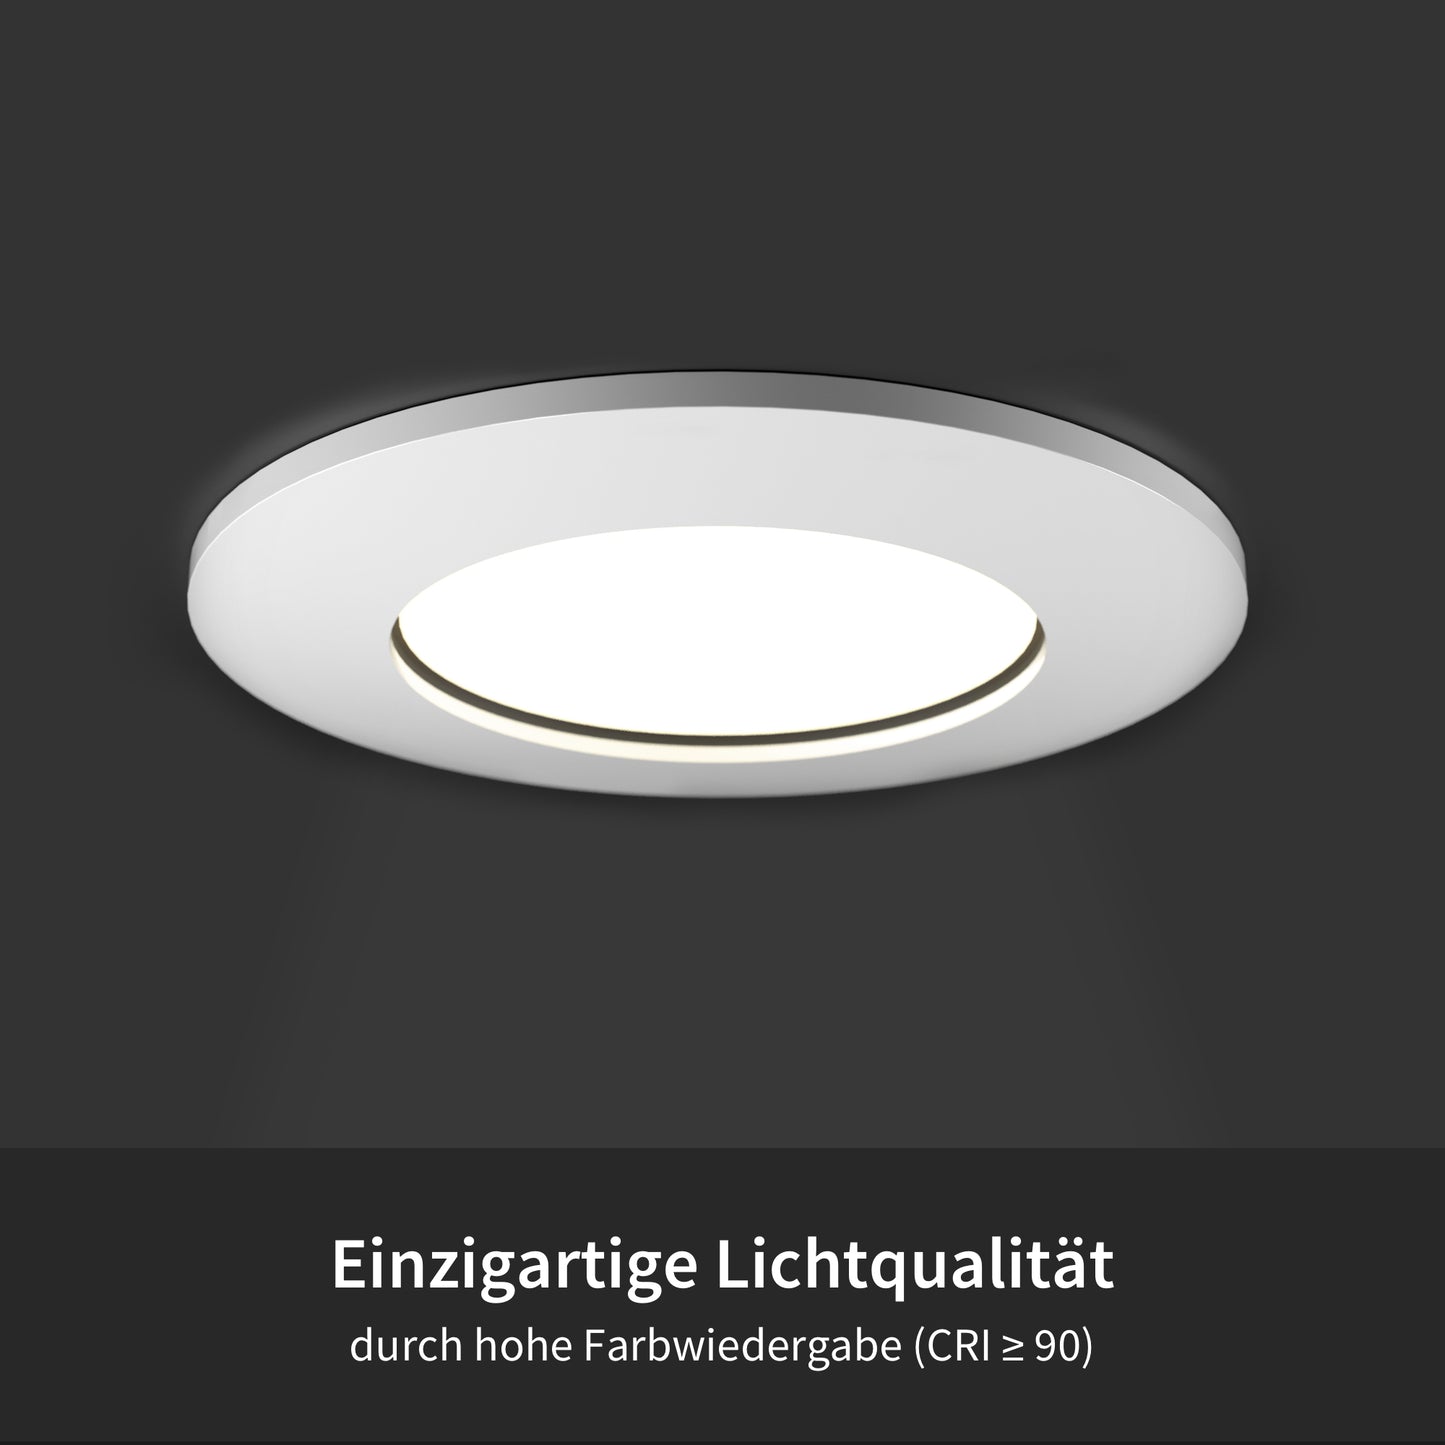 LED Einbaustrahler Weiß-Glänzend I NN-Serie